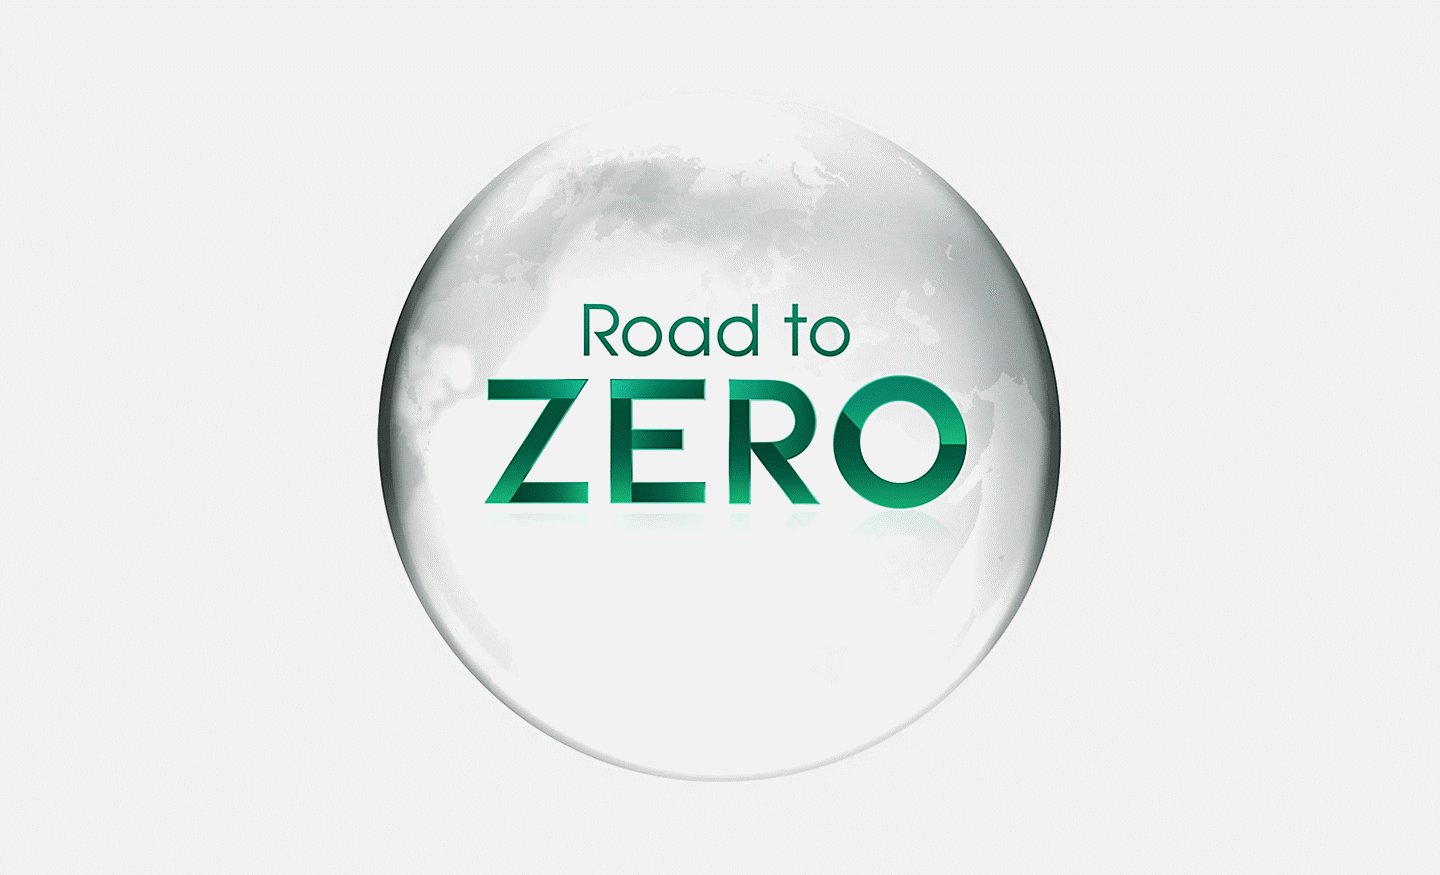 Imagen que ilustra la iniciativa Road to Zero de Sony